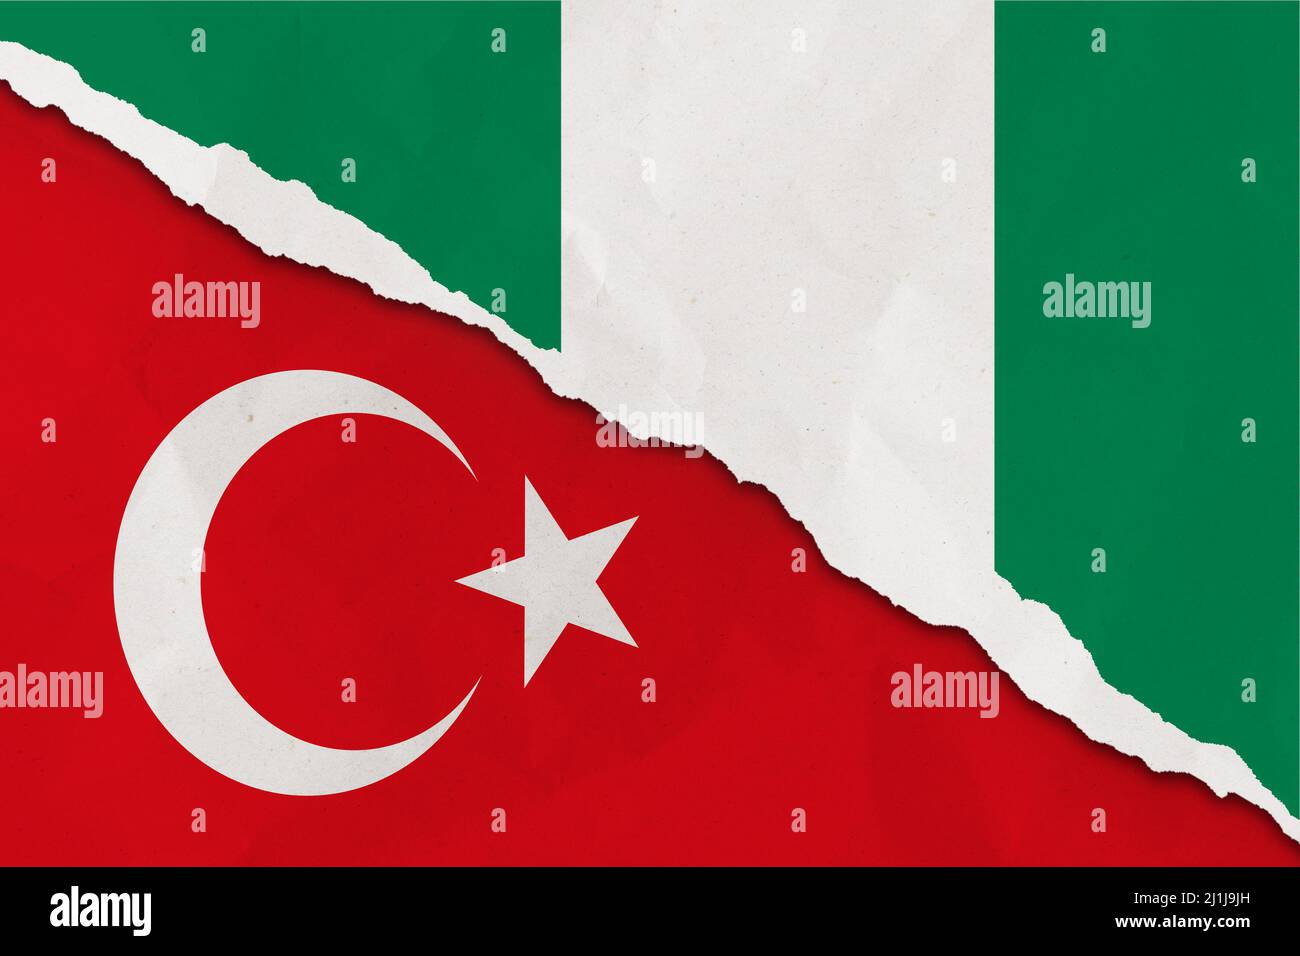 Le drapeau du Nigeria et de la Turquie a déchiré le papier grince fond. Résumé l'économie du Nigeria et de la Turquie, les conflits politiques, la texture du concept de guerre contexte Banque D'Images